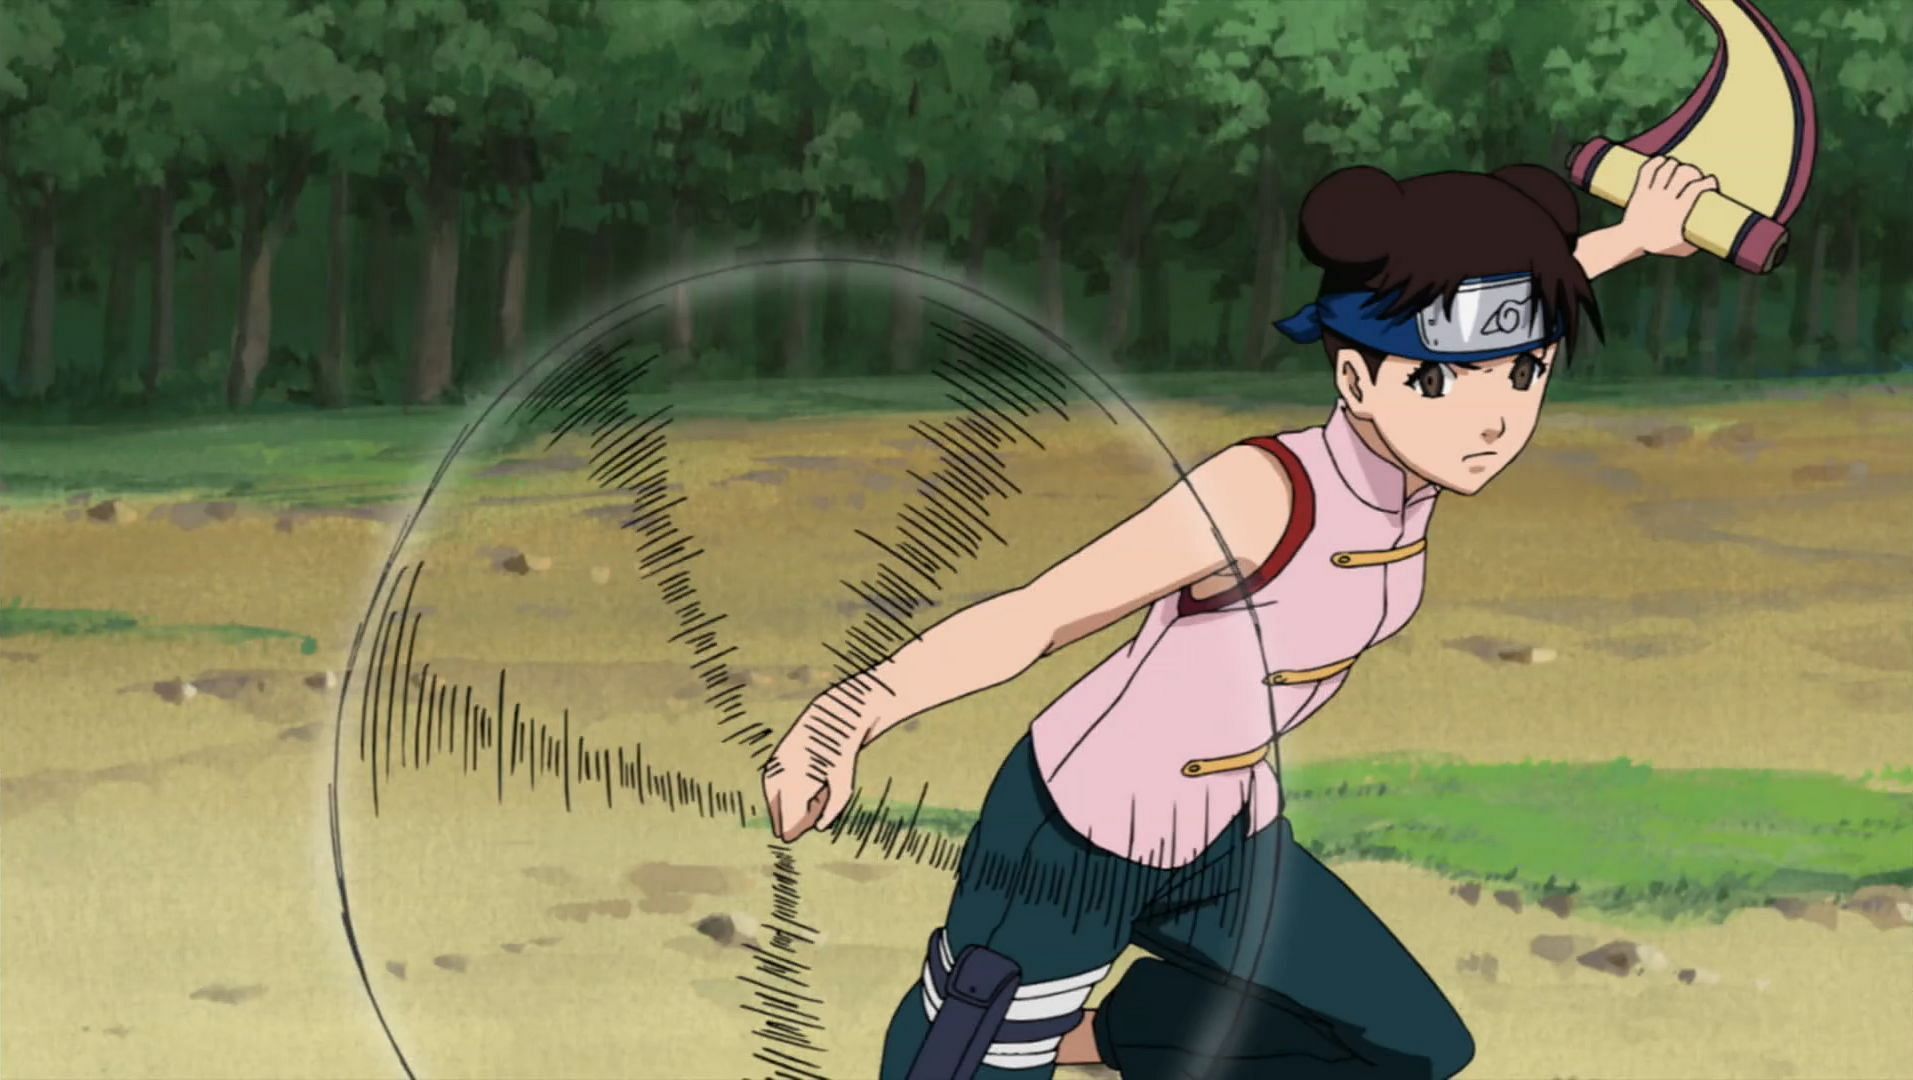 Tenten wielding weapons in the Naruto series (Image via Studio Pierrot)